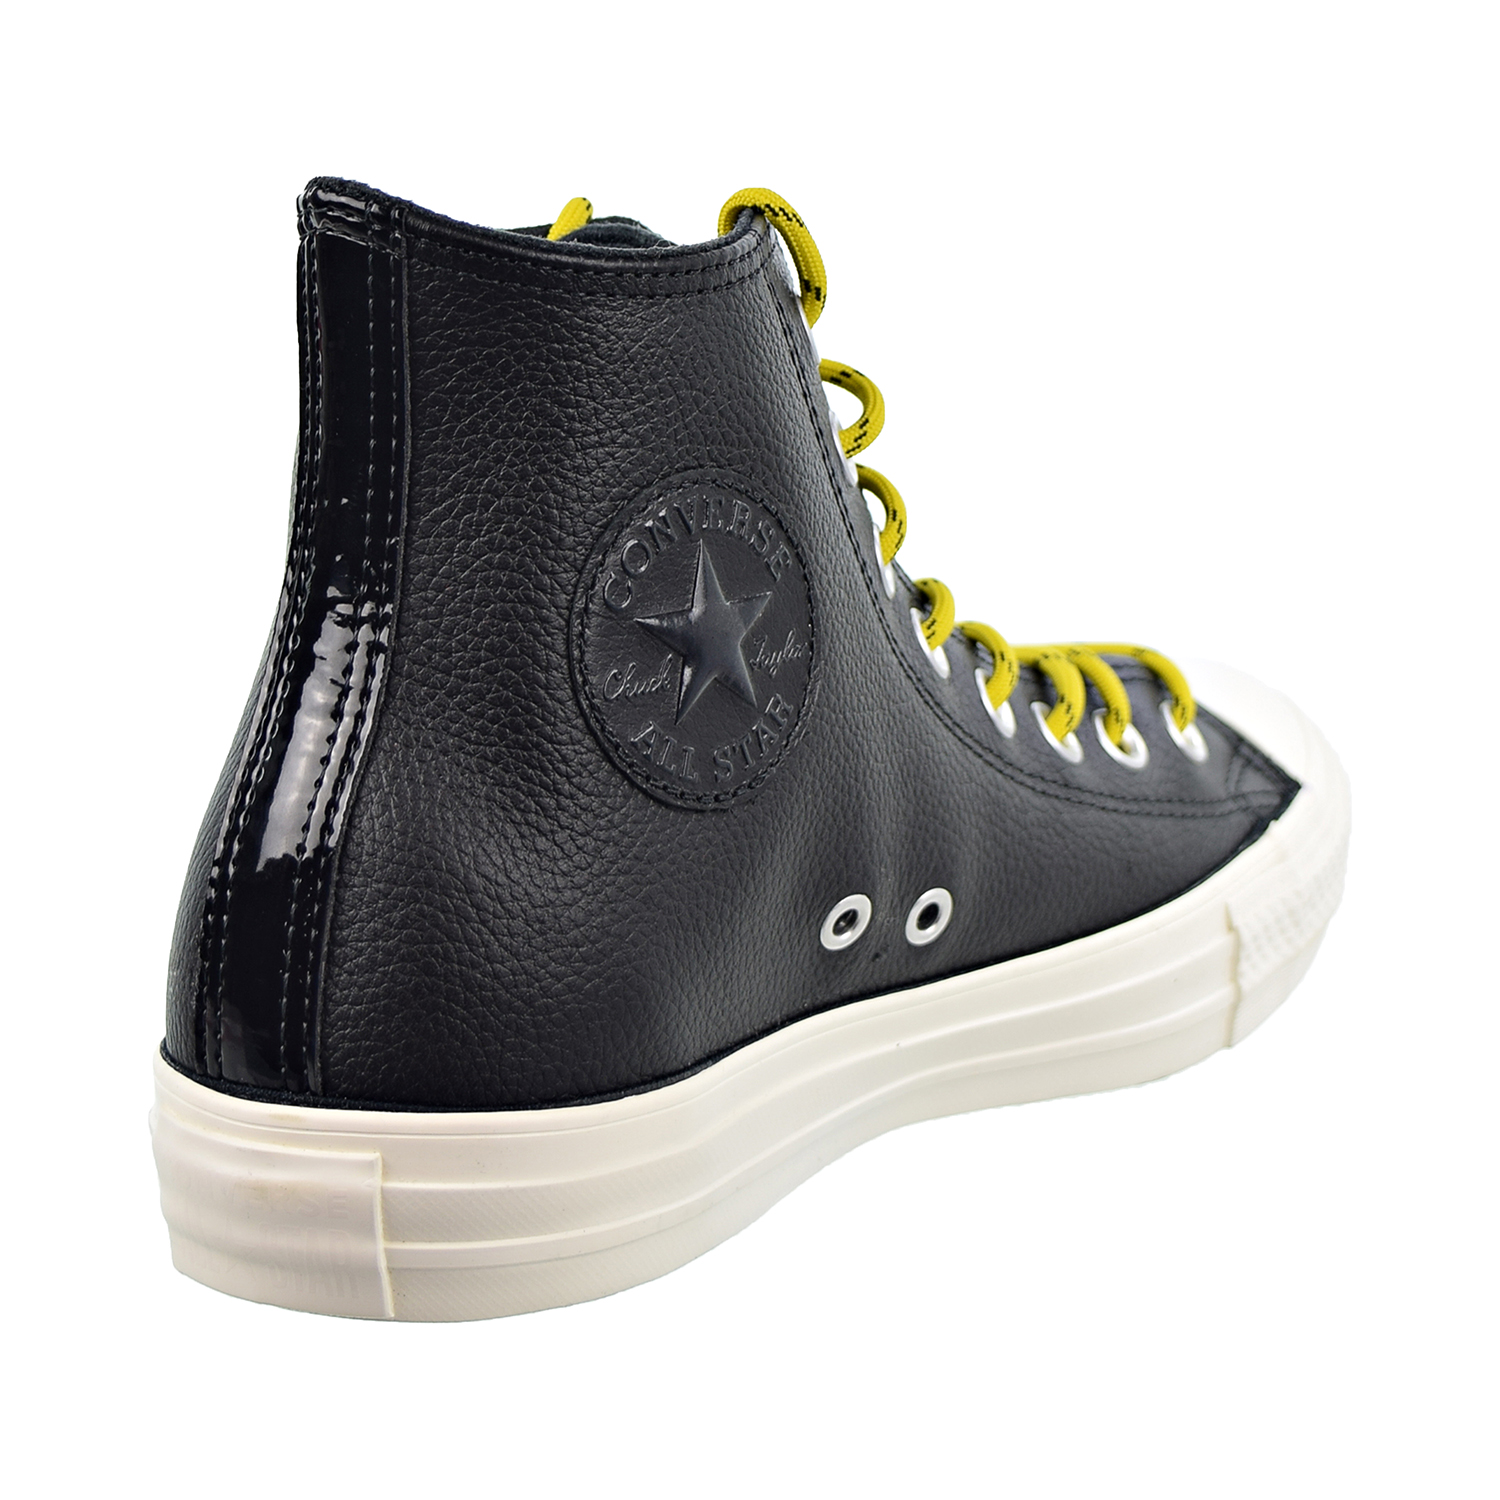 Converse Chuck Taylor All Star HI Mens Shoes Black-Bold Citron-Egret 163339c - image 3 of 6